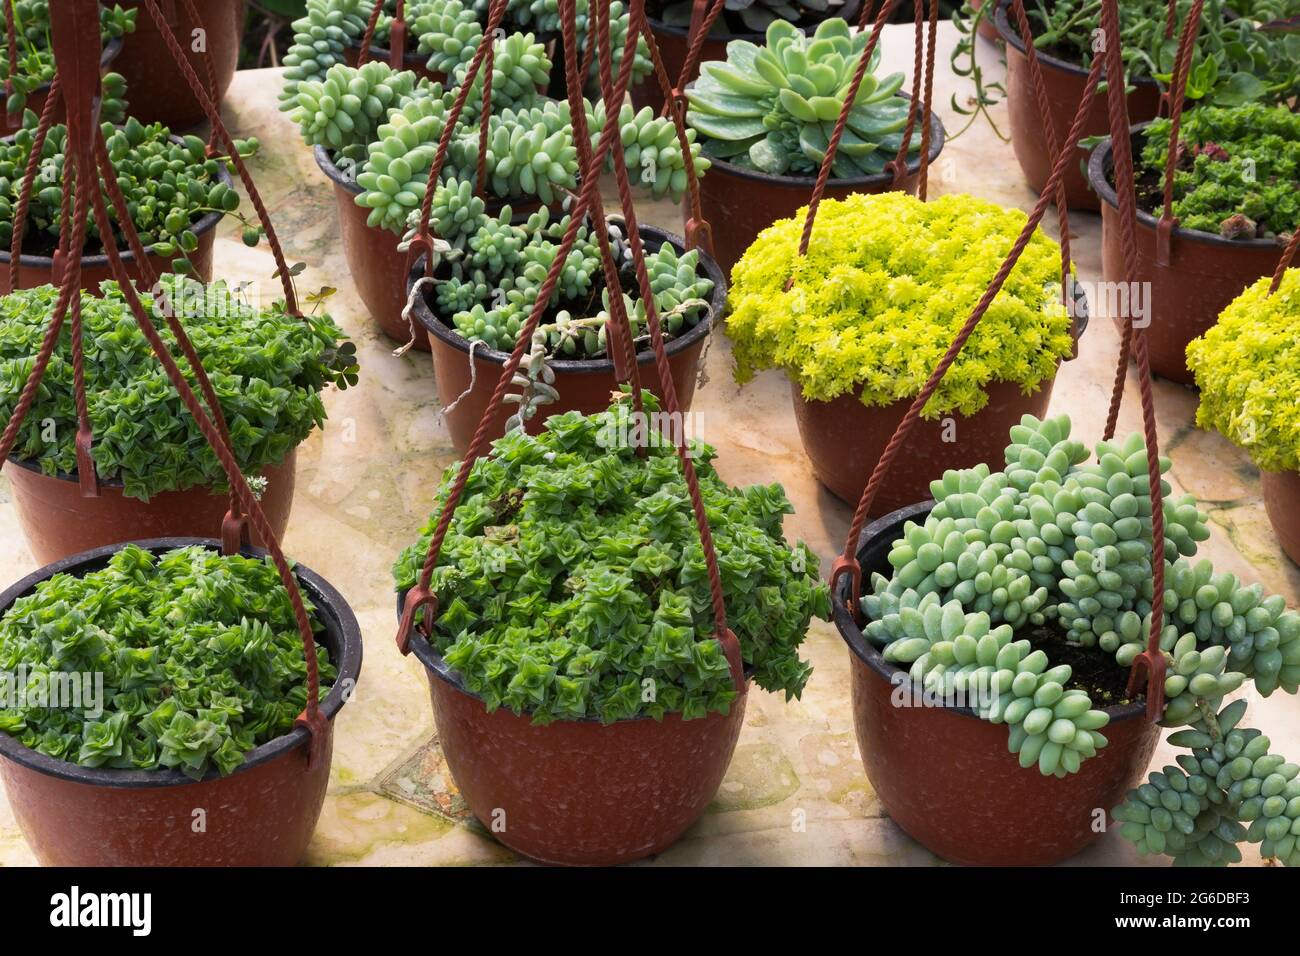 Mélange d'Echeveria - plantes succulentes en plastique brun paniers suspendus sur la table à l'intérieur d'une serre. Banque D'Images